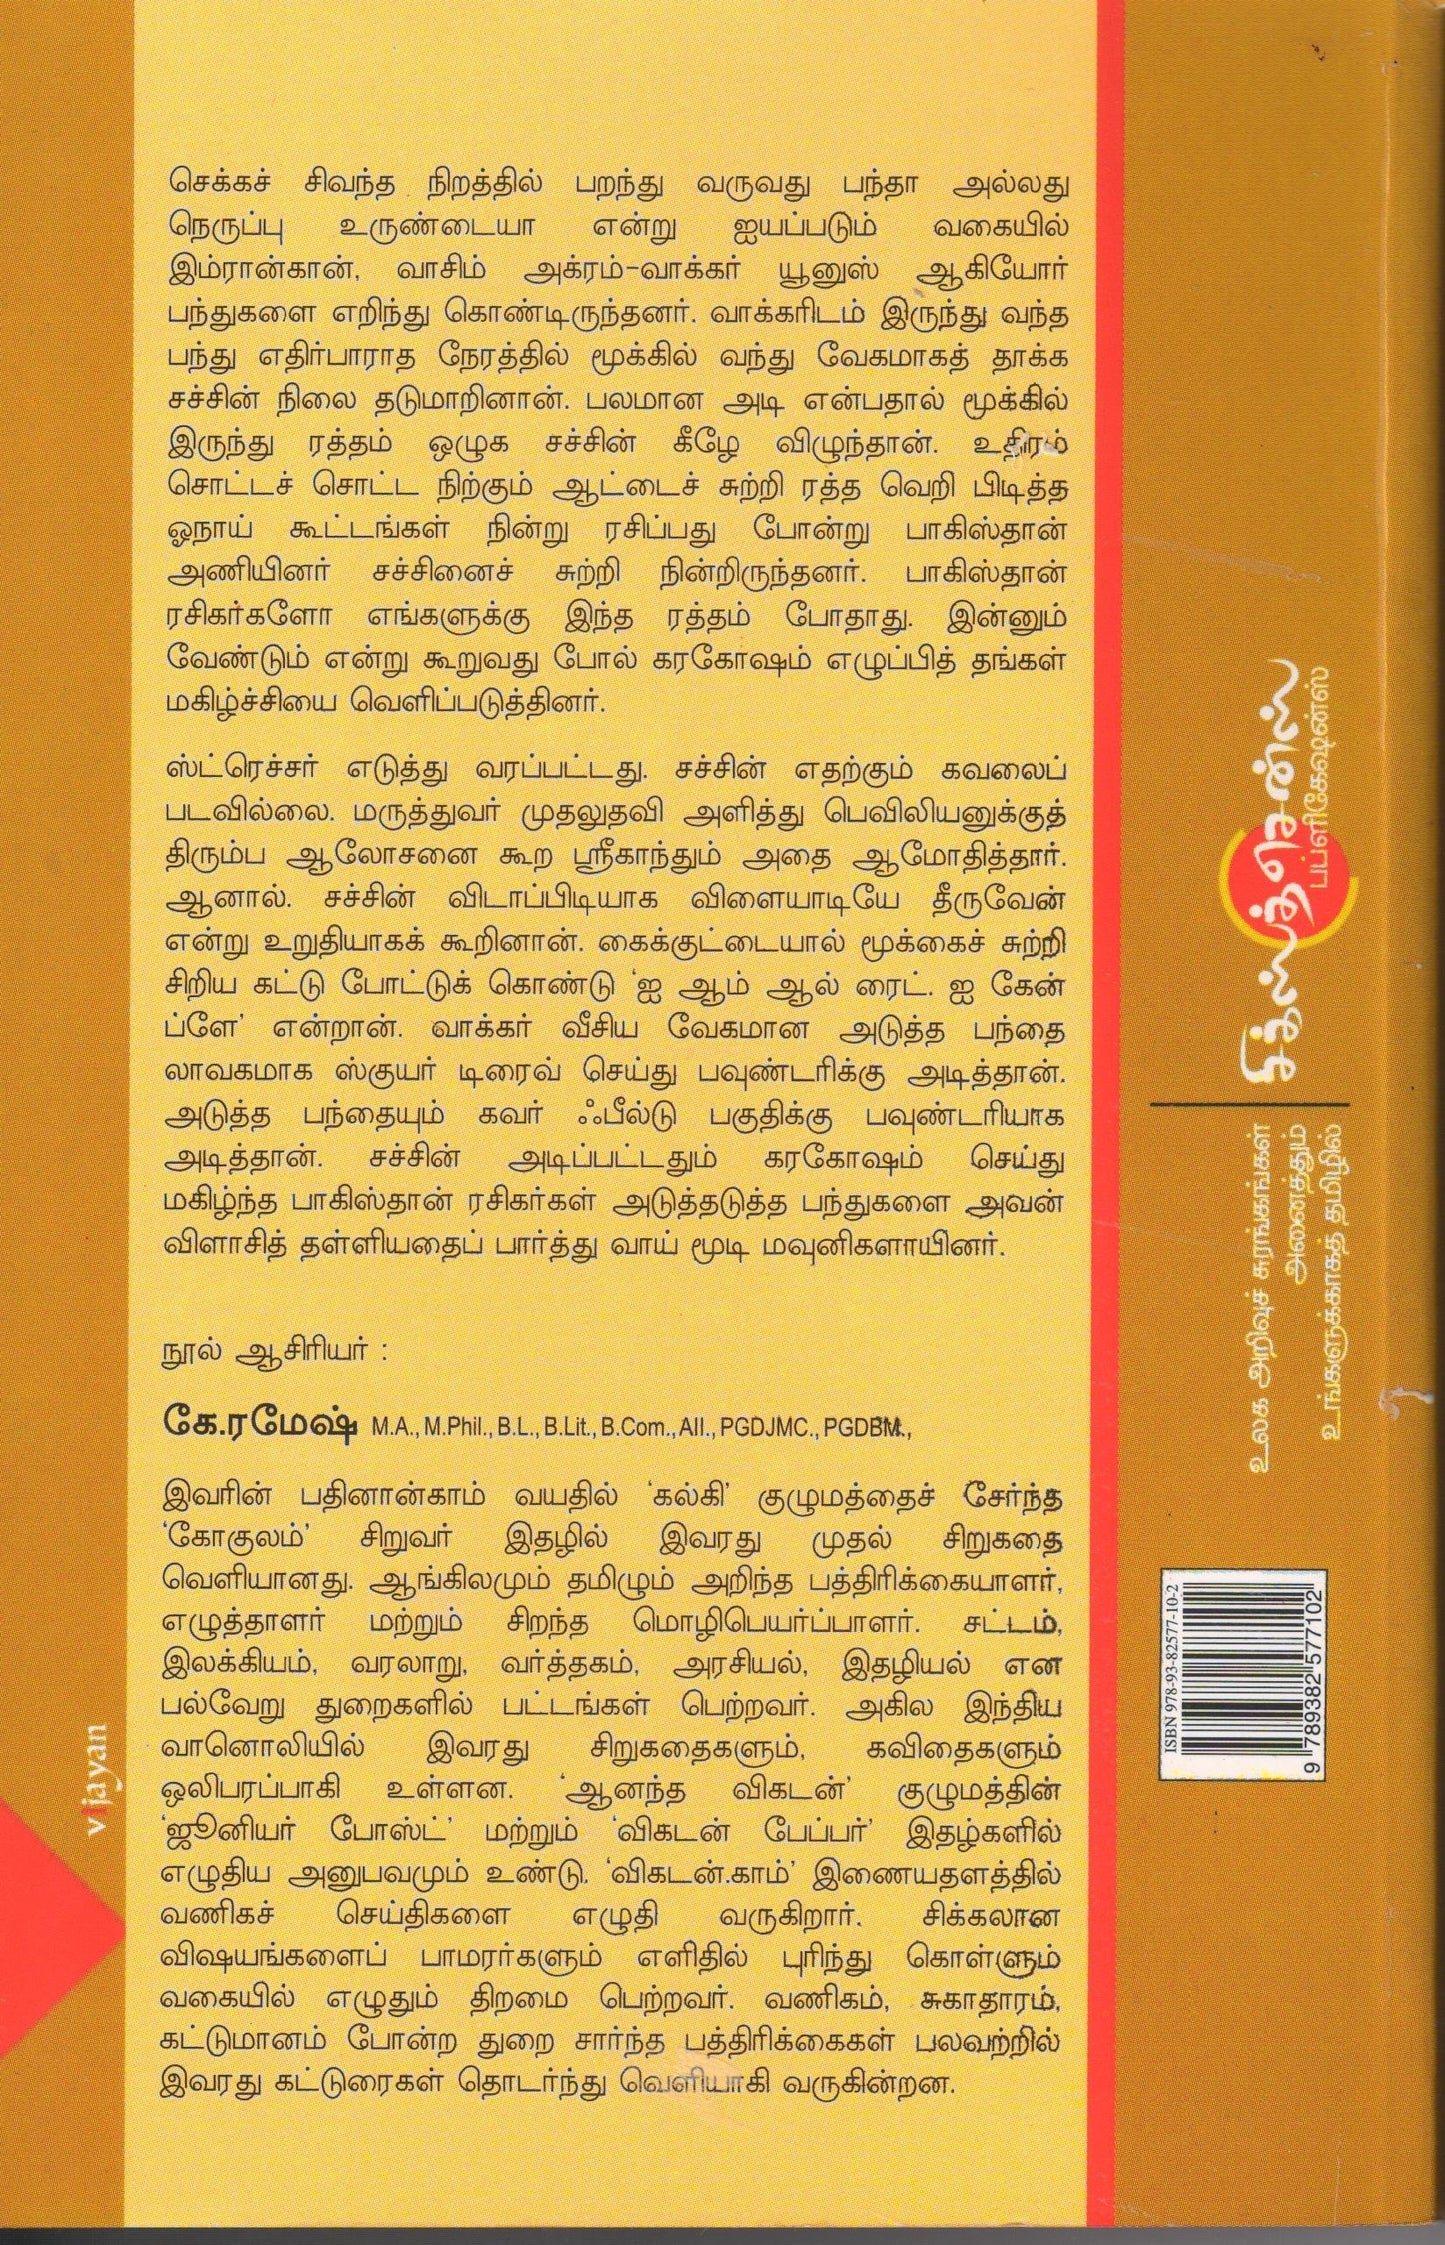 சச்சின் ஒரு சுனாமியின் சரித்திரம் Sachin: Oru Sunamiyin Sarithiram(Tamil Books)